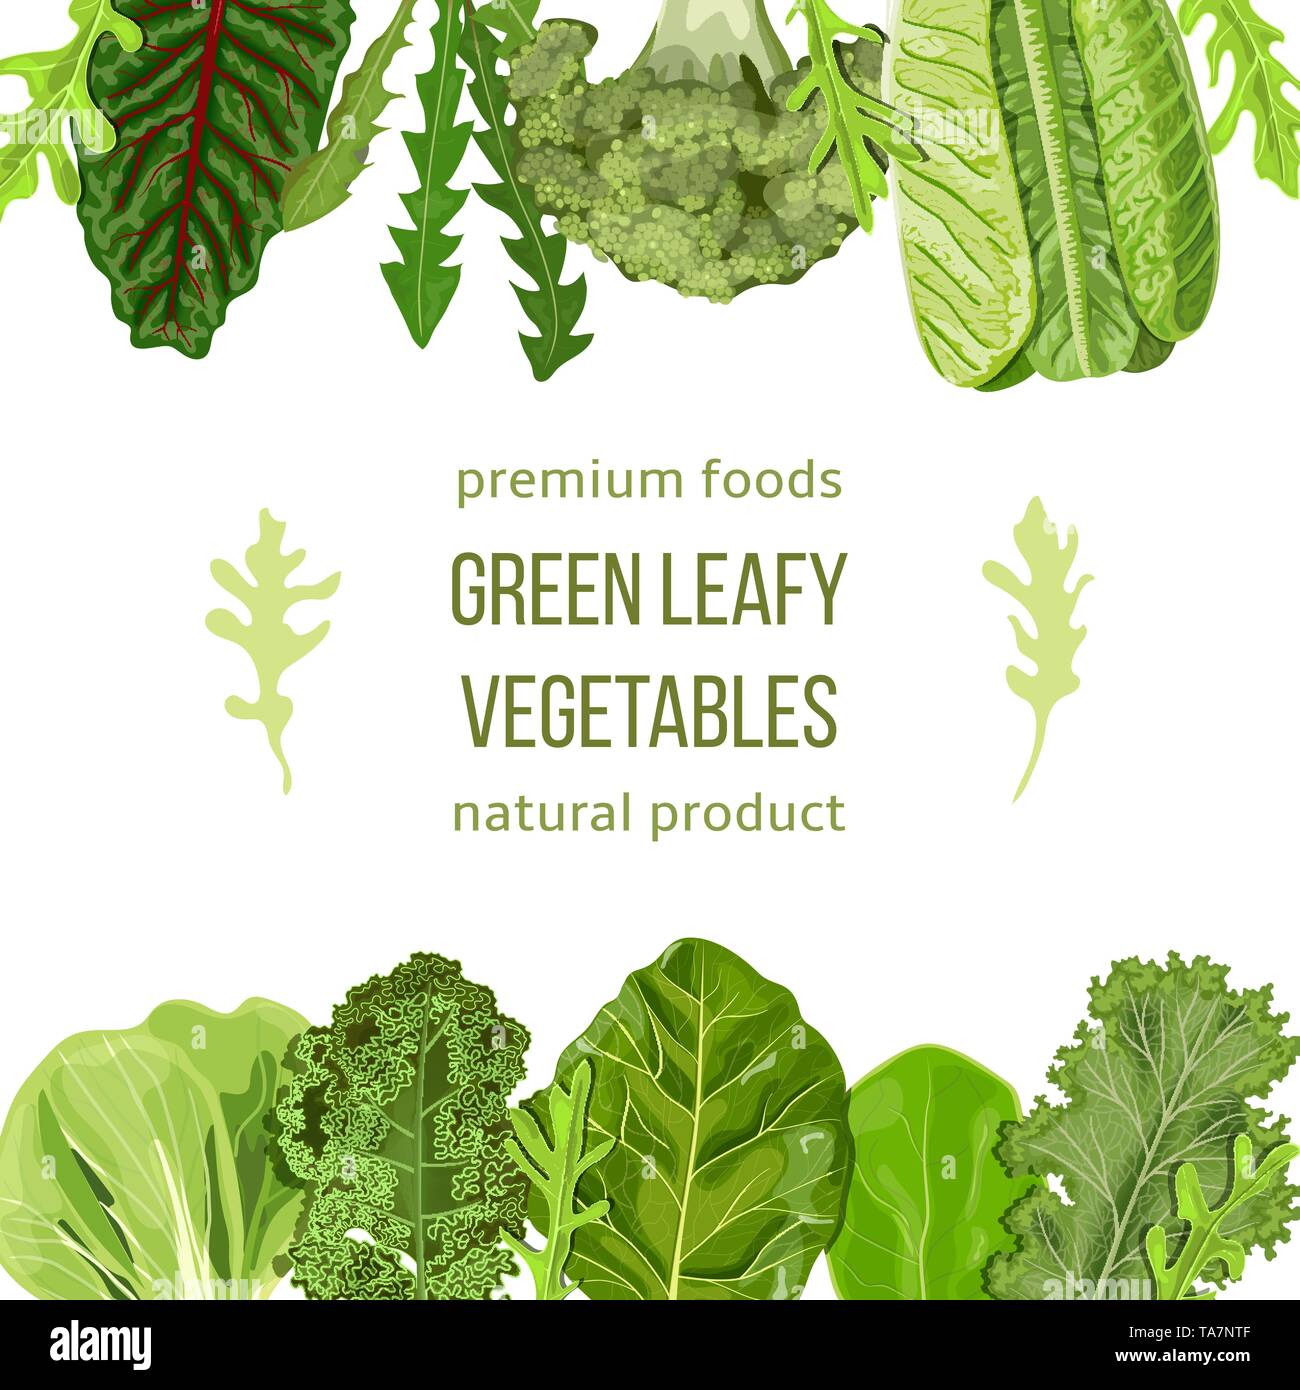 Populaires les légumes verts. Jeu d'étiquettes avec texte sur bande. texte, copt space Illustration de Vecteur